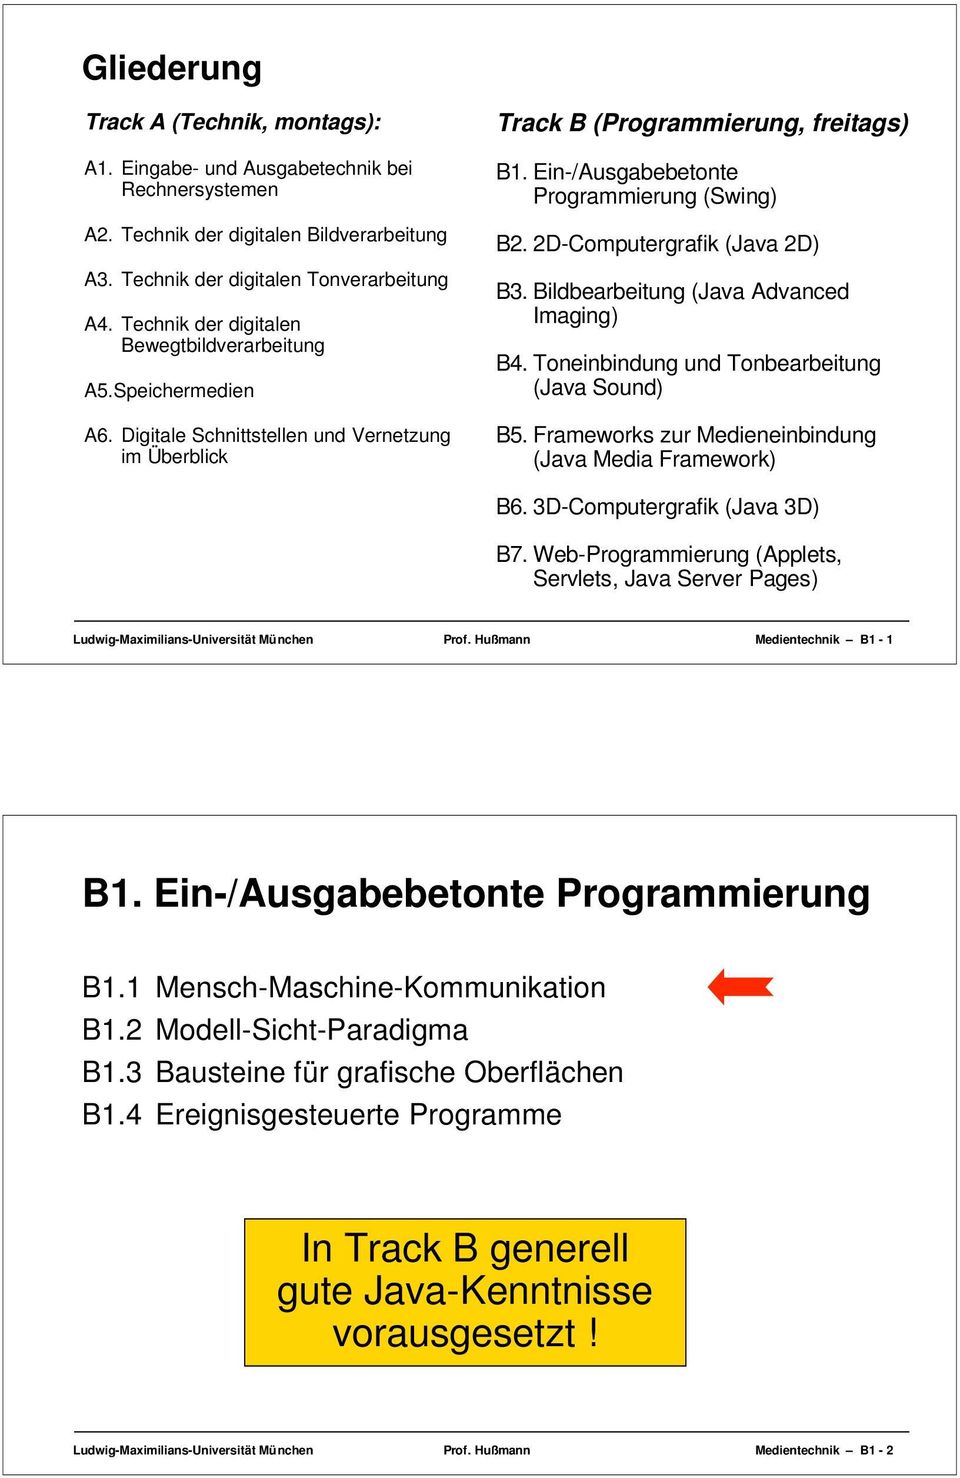 Ein-/Ausgabebetonte Programmierung (Swing) B2. 2D-Computergrafik (Java 2D) B3. Bildbearbeitung (Java Advanced Imaging) B4. Toneinbindung und Tonbearbeitung (Java Sound) B5.